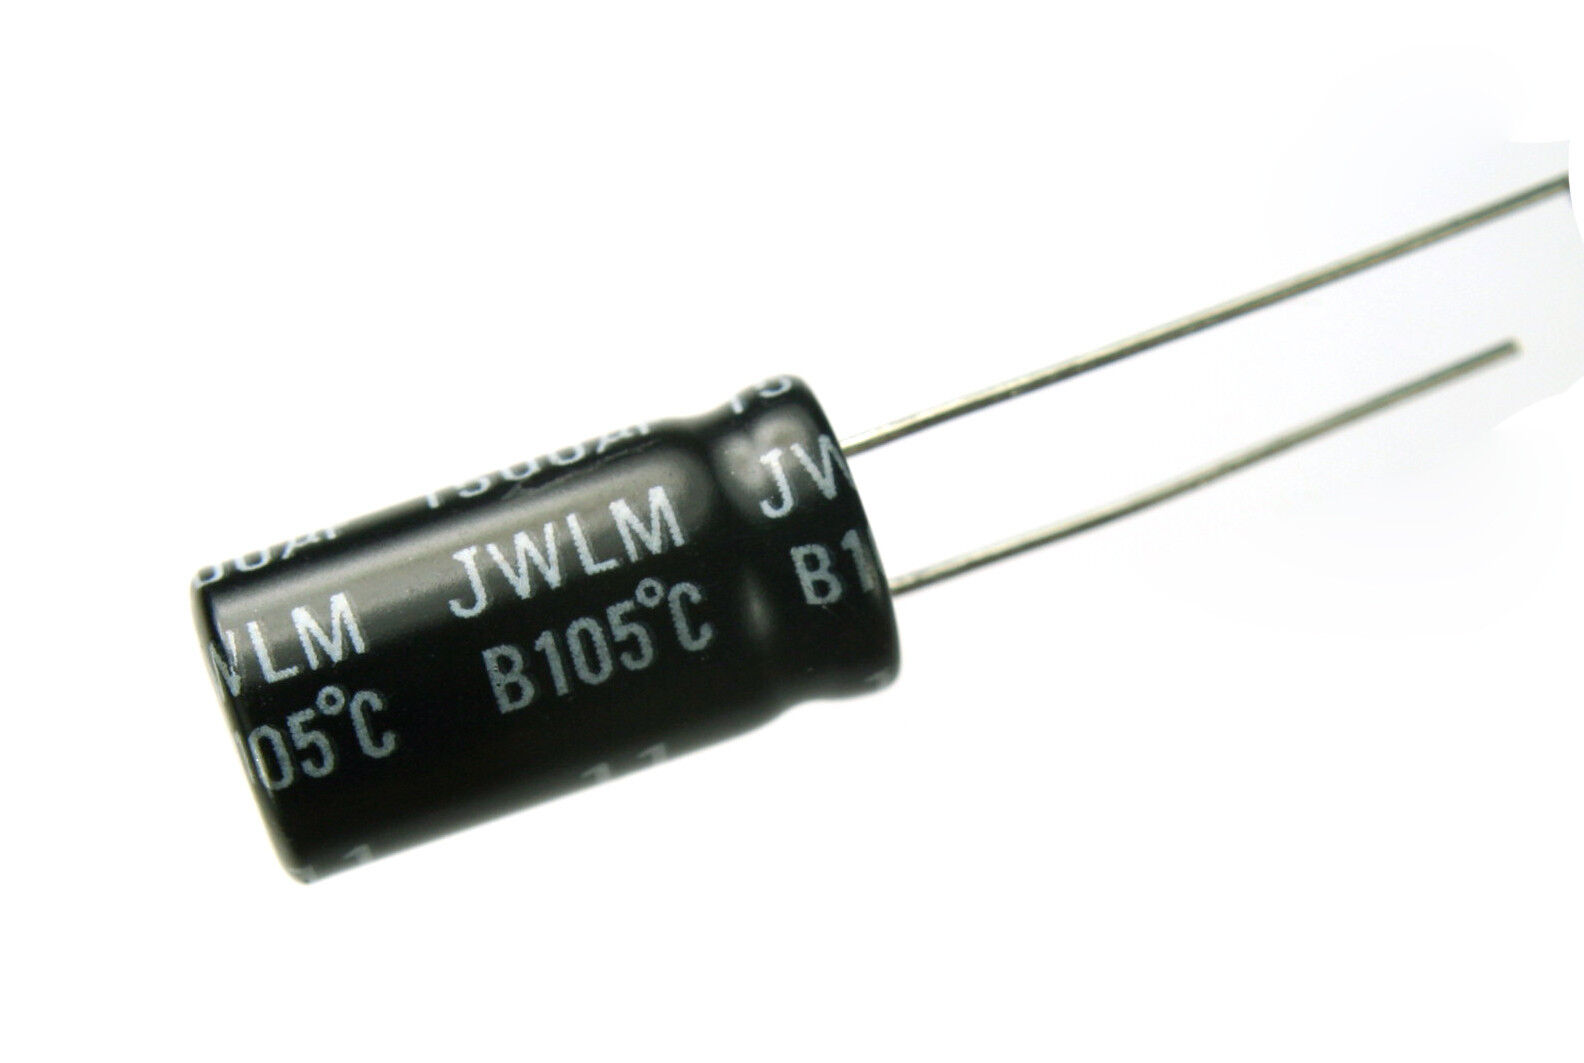 10pcs Illinois Capacitor JWLM 1500uF 6.3v 105C Radial Electrolytic Low Impedance